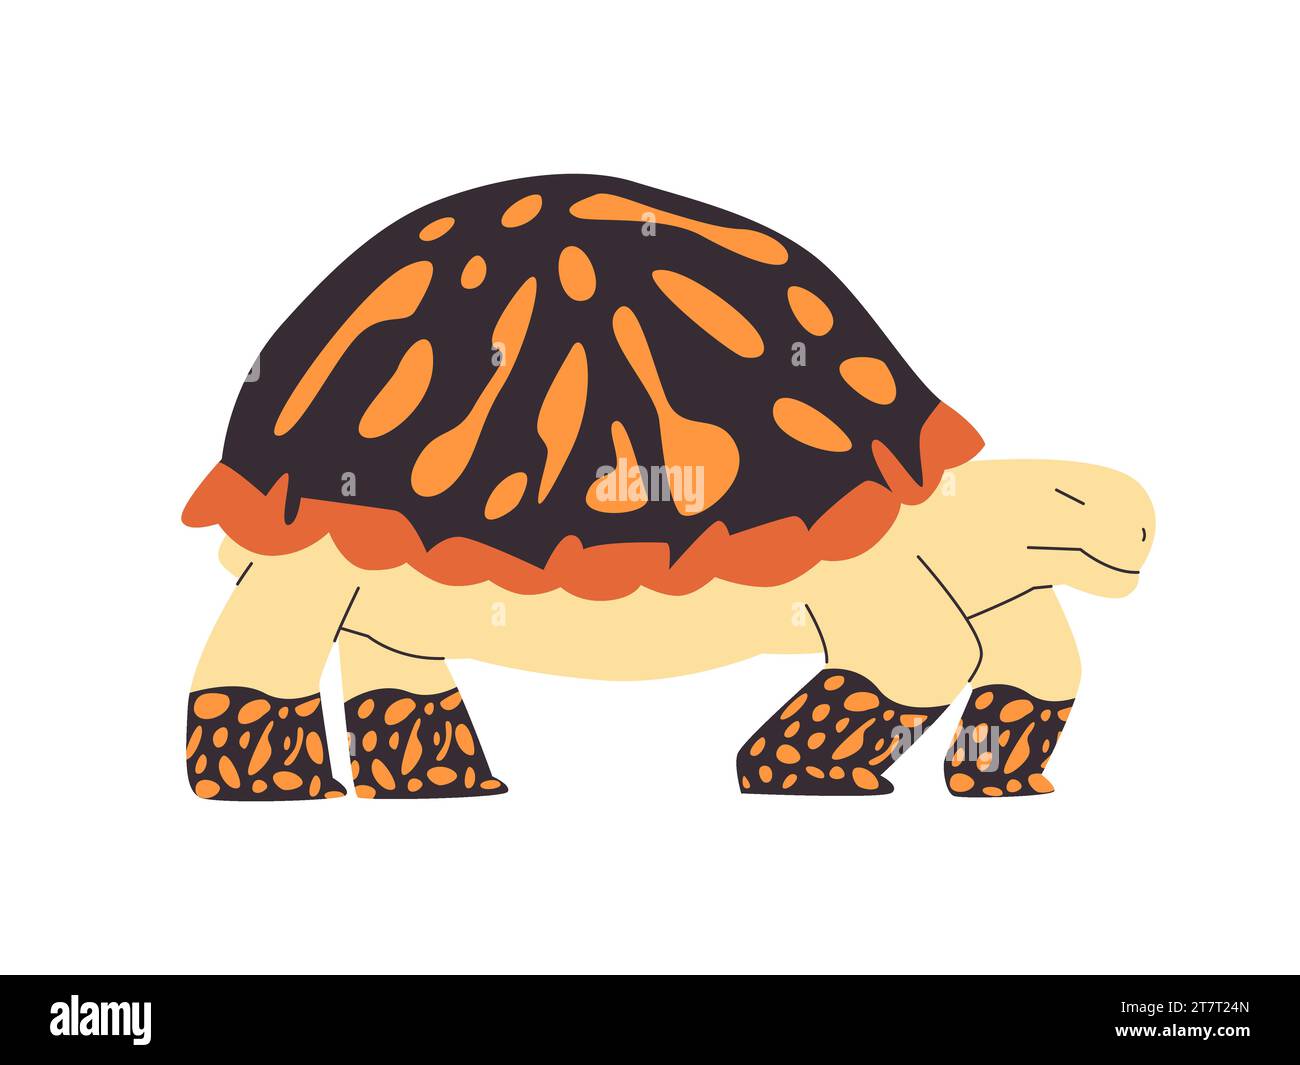 Verzierte Kastenschildkröte in schwarzer Farbe und orangenem Punkt wilde Naturtiere langsamer Spaziergang mit Muscheln Stock Vektor